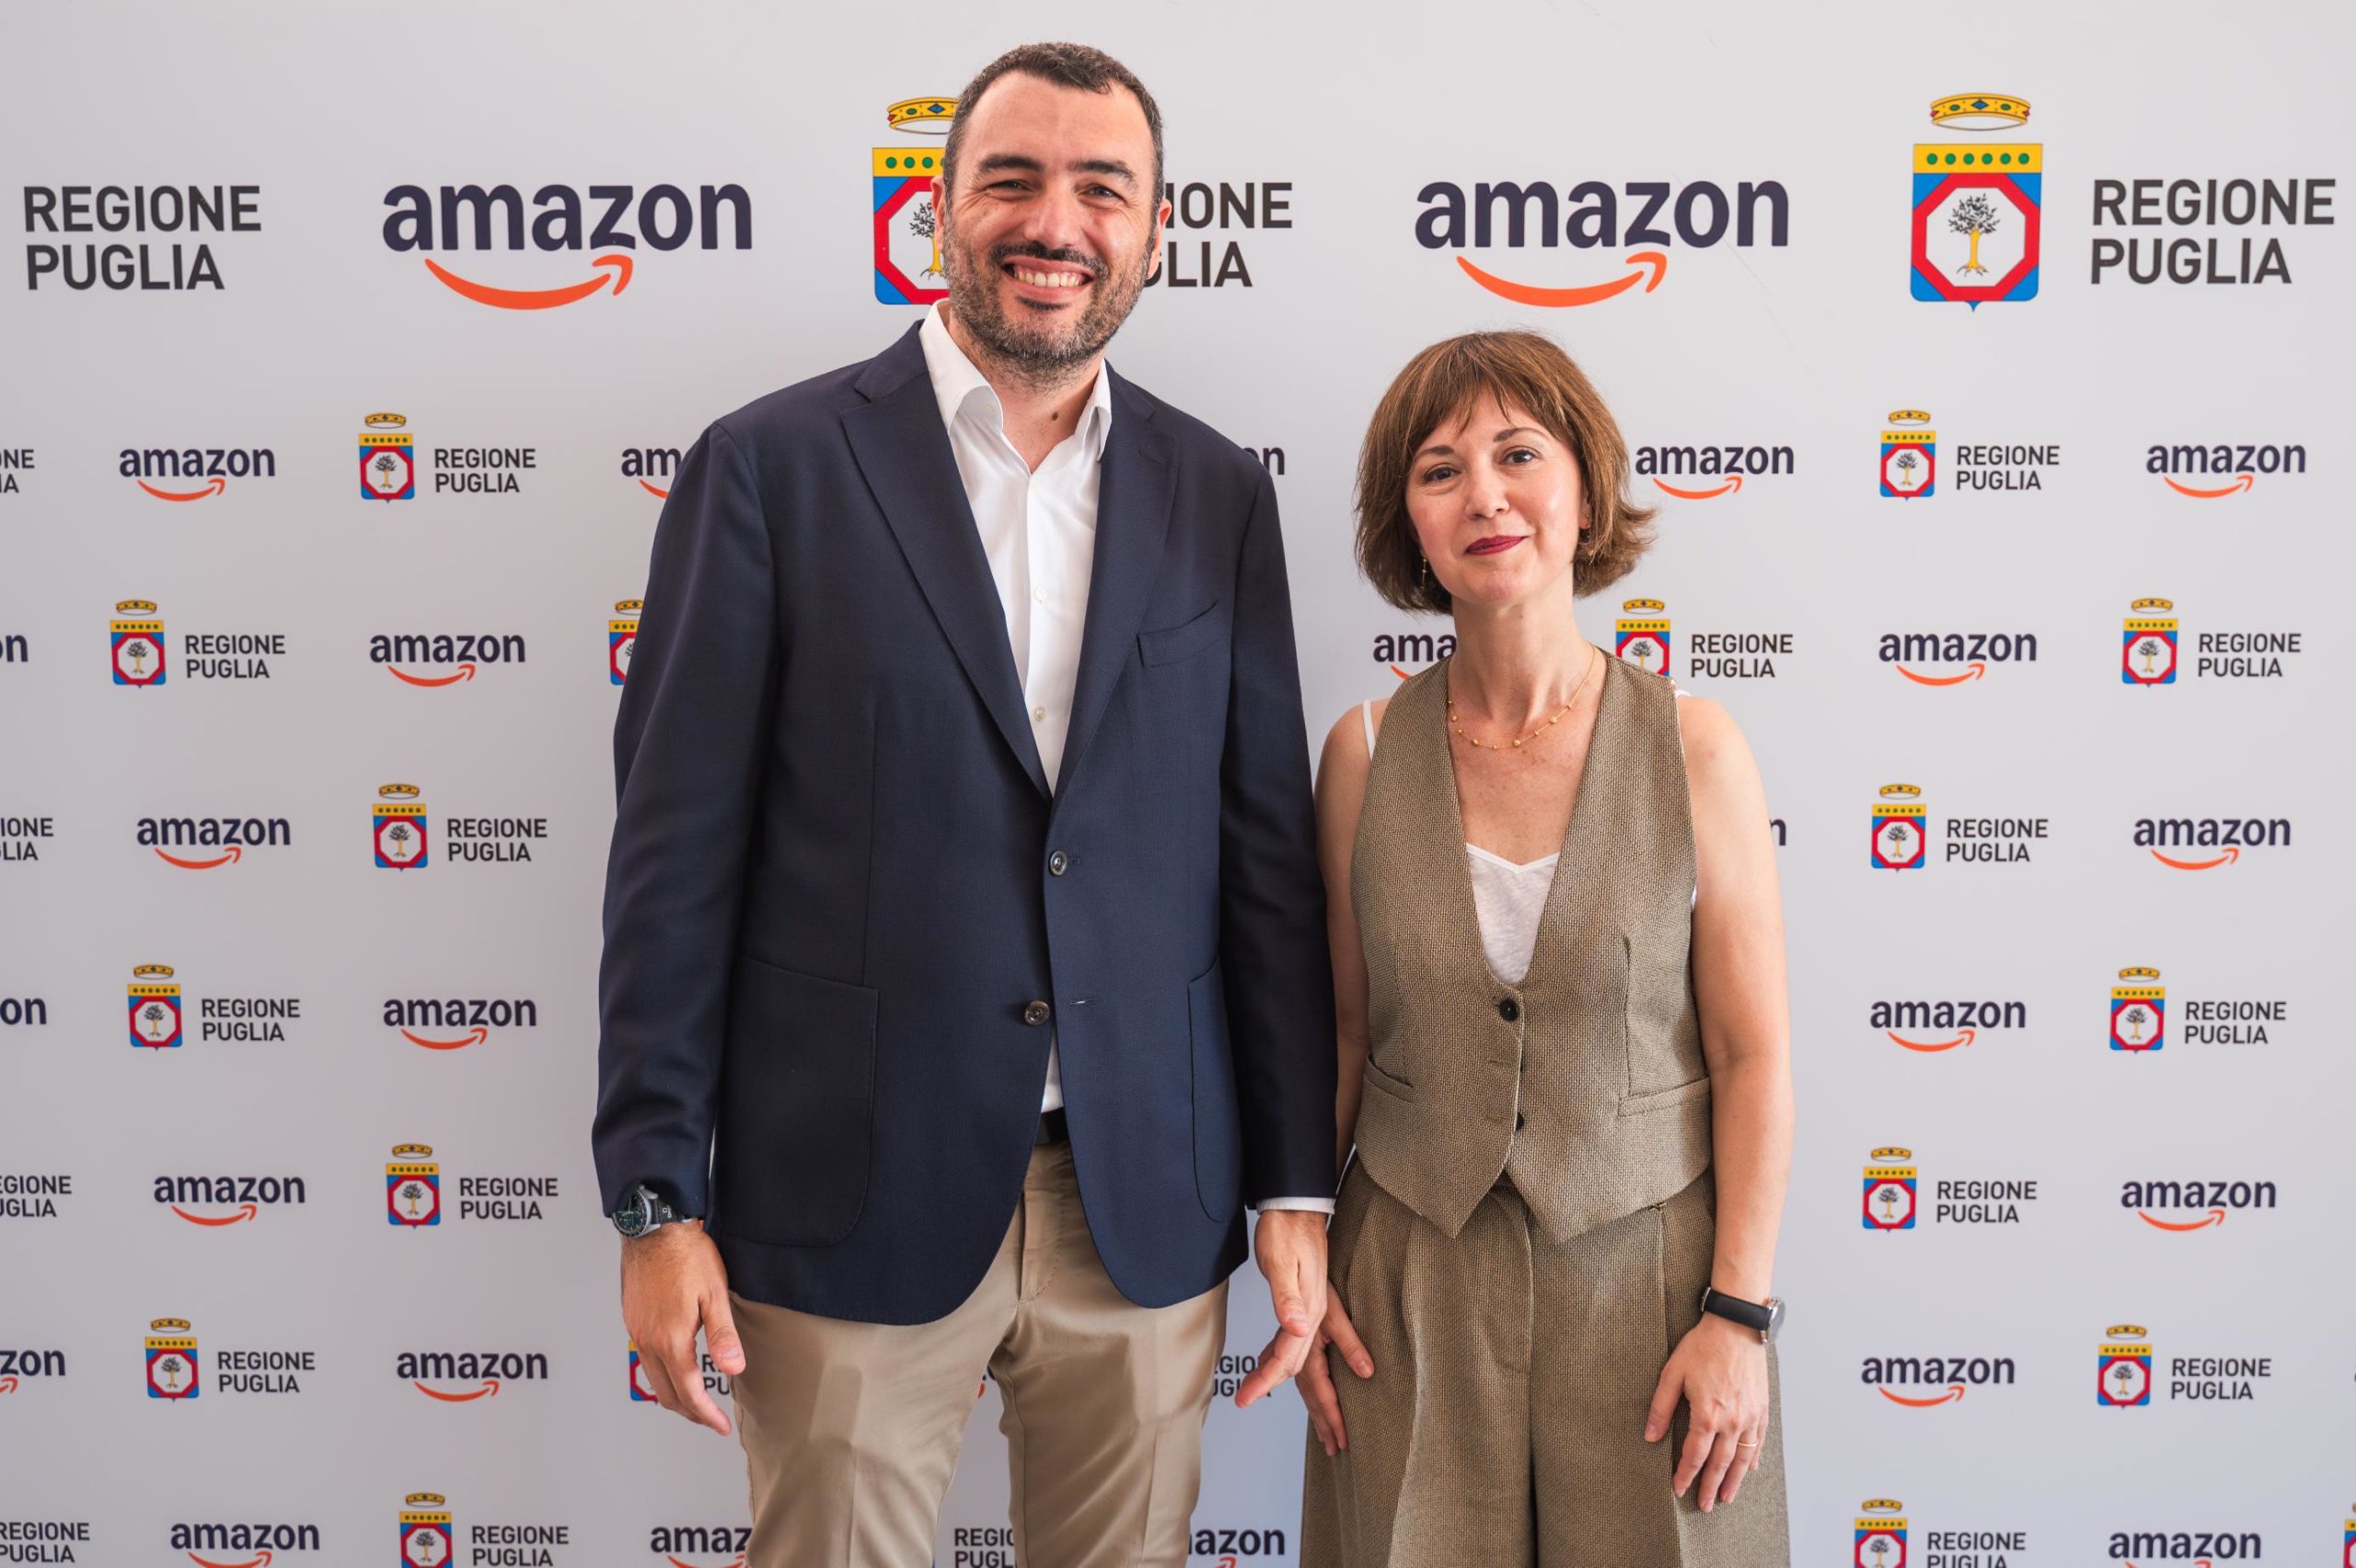 Amazon al ﬁanco di Regione Puglia per sostenere la digitalizzazione e l’internazionalizzazione delle piccole e medie imprese del territorio